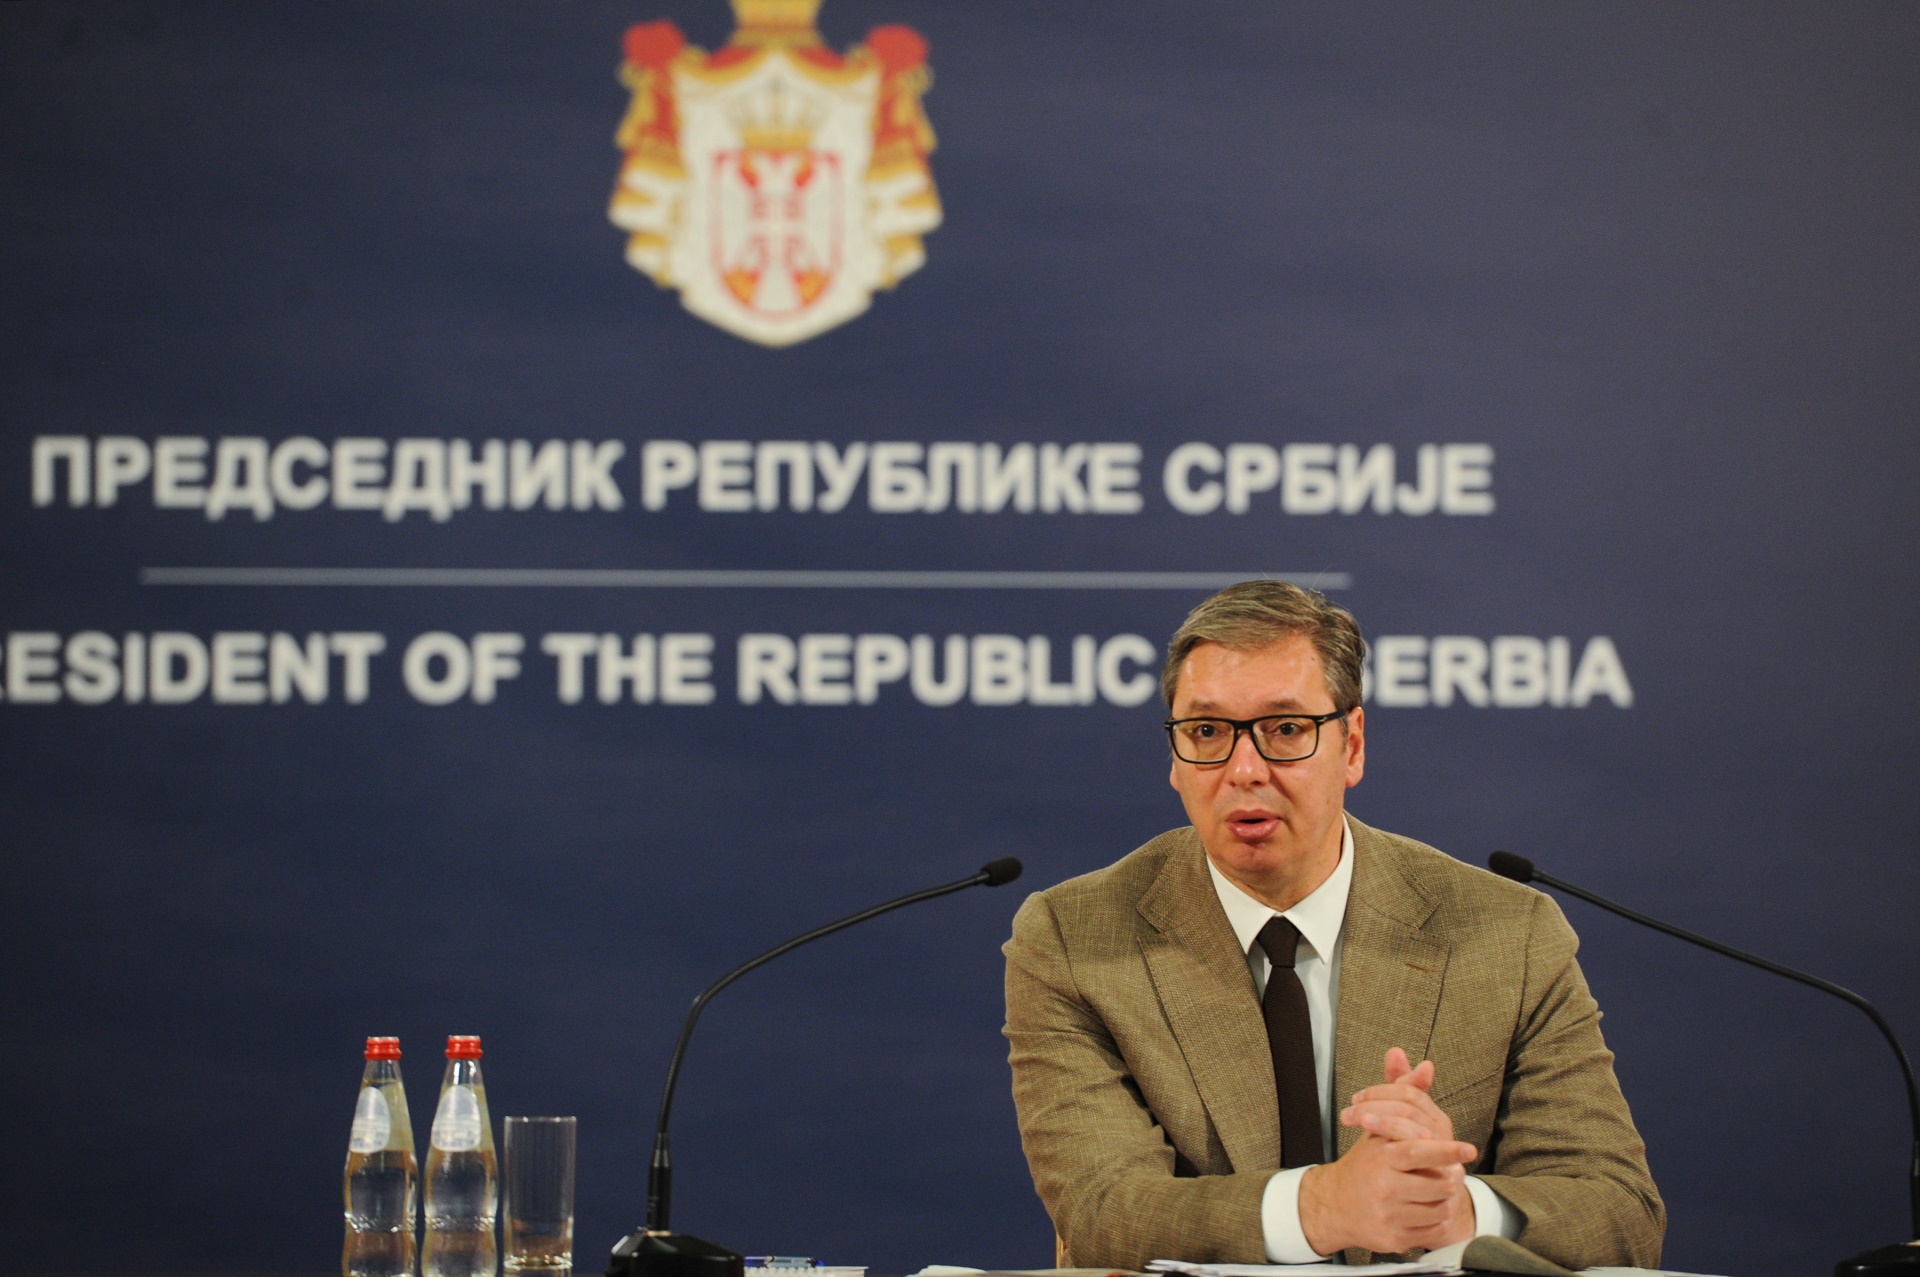 Председник Републике Србије Александар Вучић оценио је да је ситуација за наш народ на Косову и Метохији веома компликована и сложена.